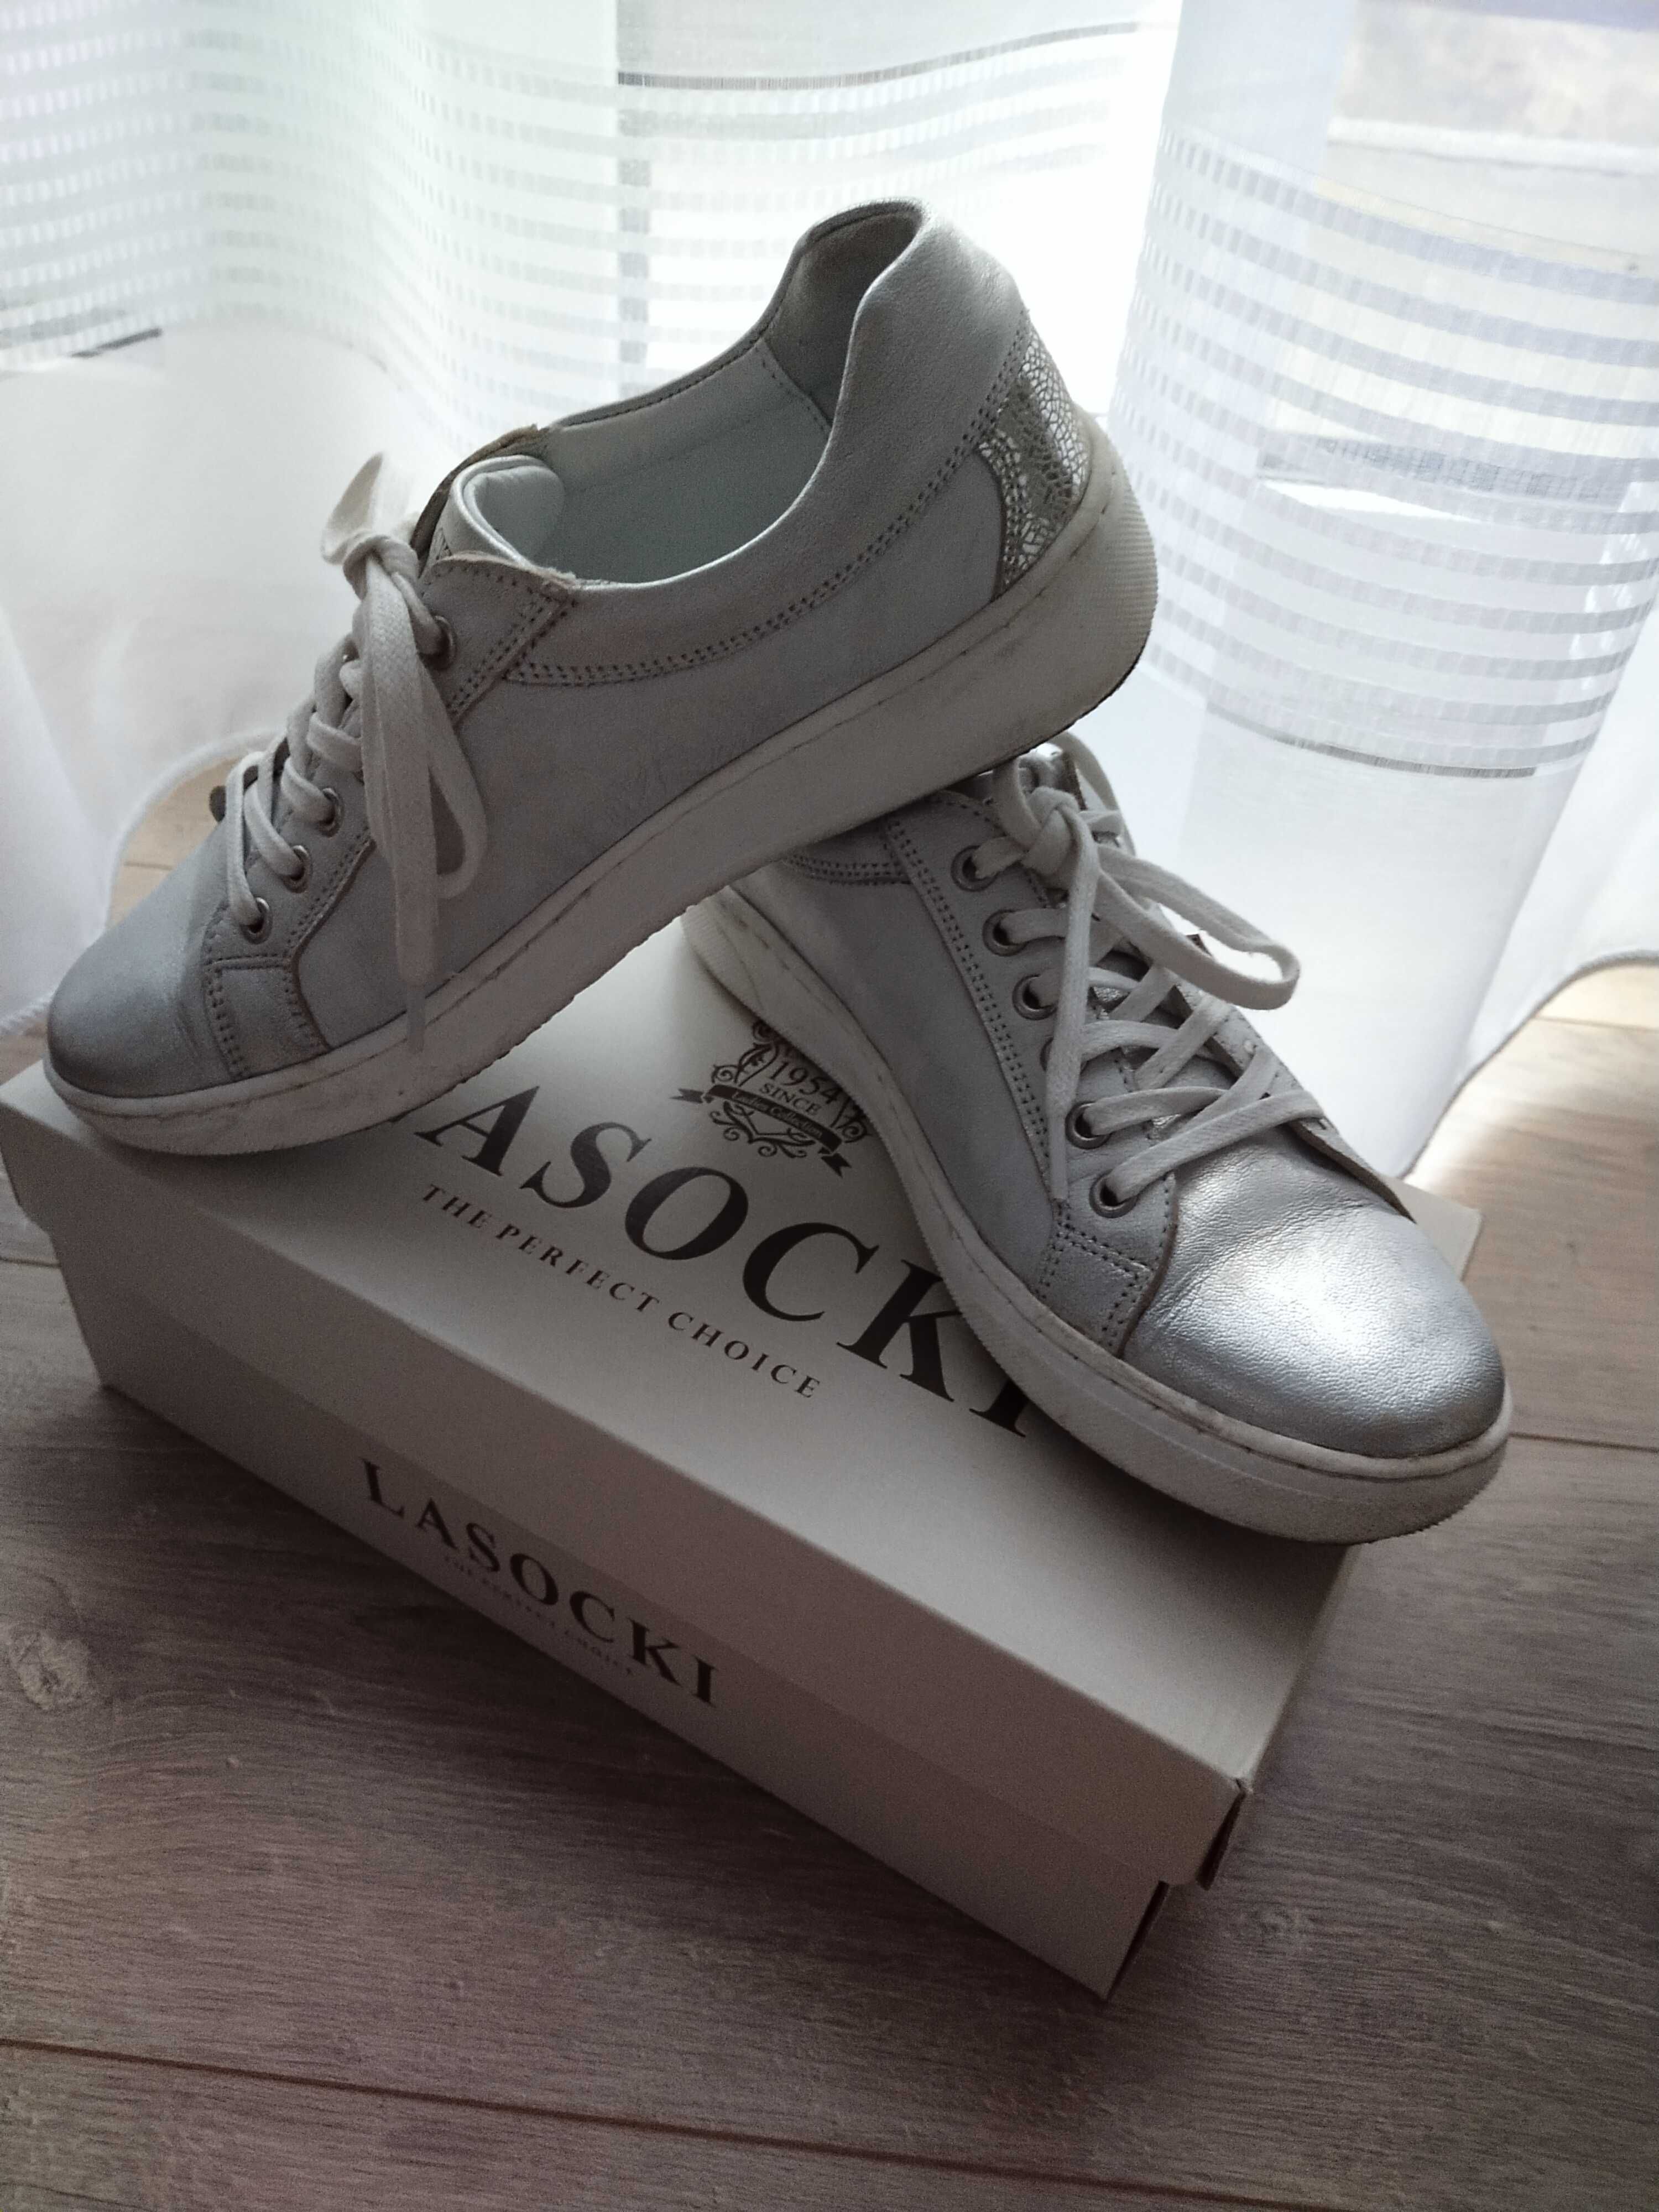 Adidasy sneakersy trampki Lasocki  r.37 skóra naturalna srebrne